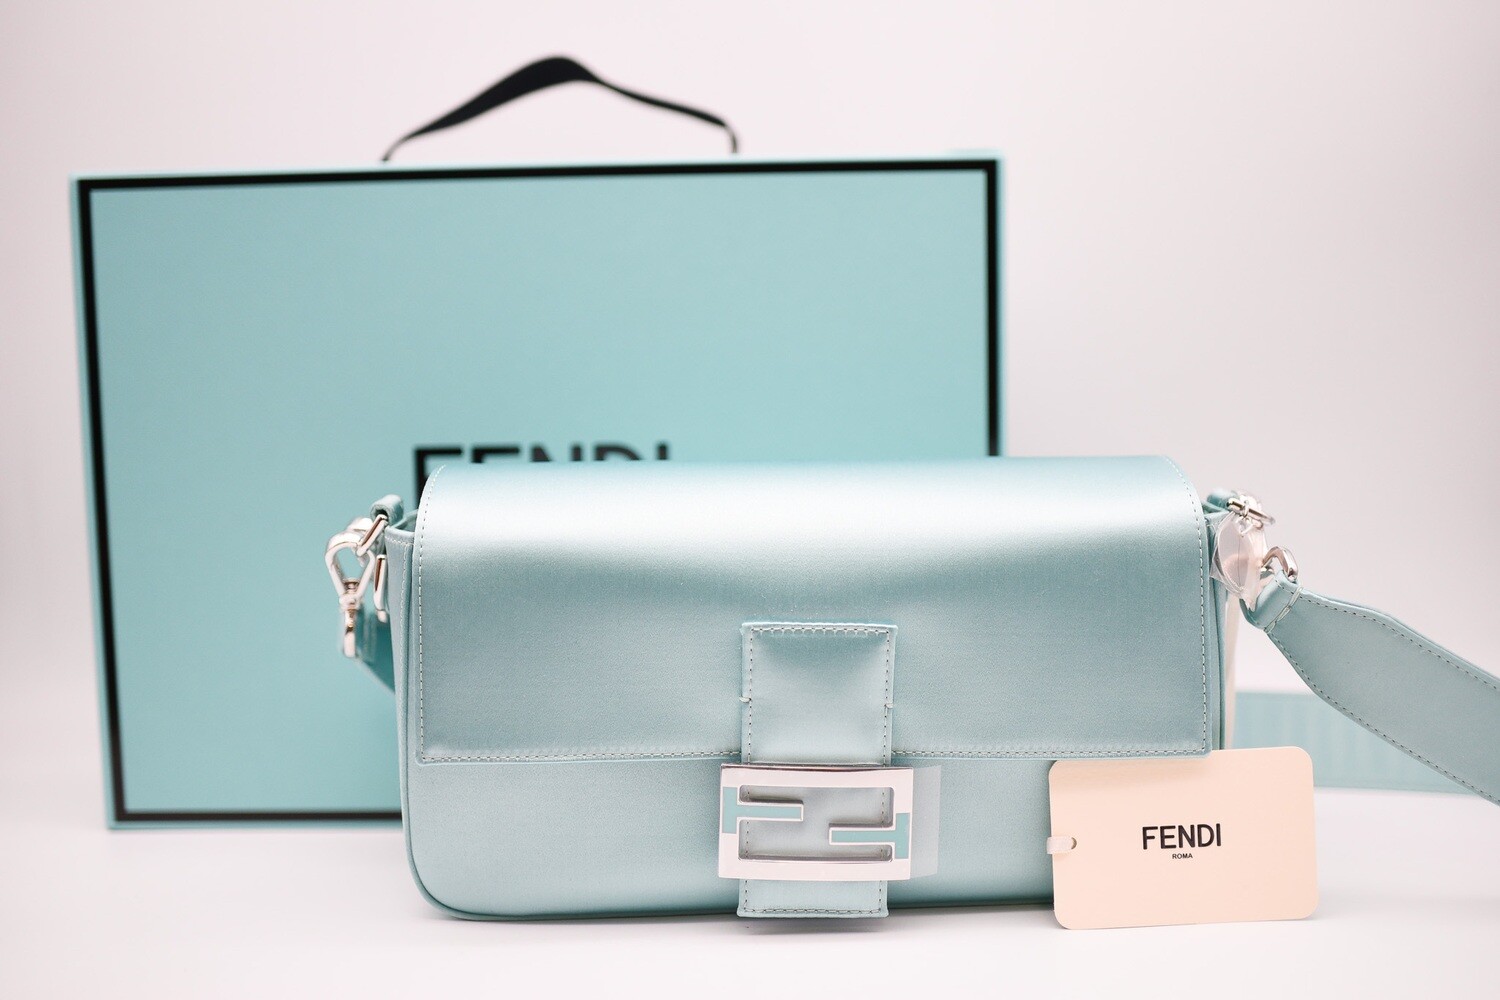 tiffany blue 🤍 #bags #purses #purseblog #fendibaguette #ysl #juliafox